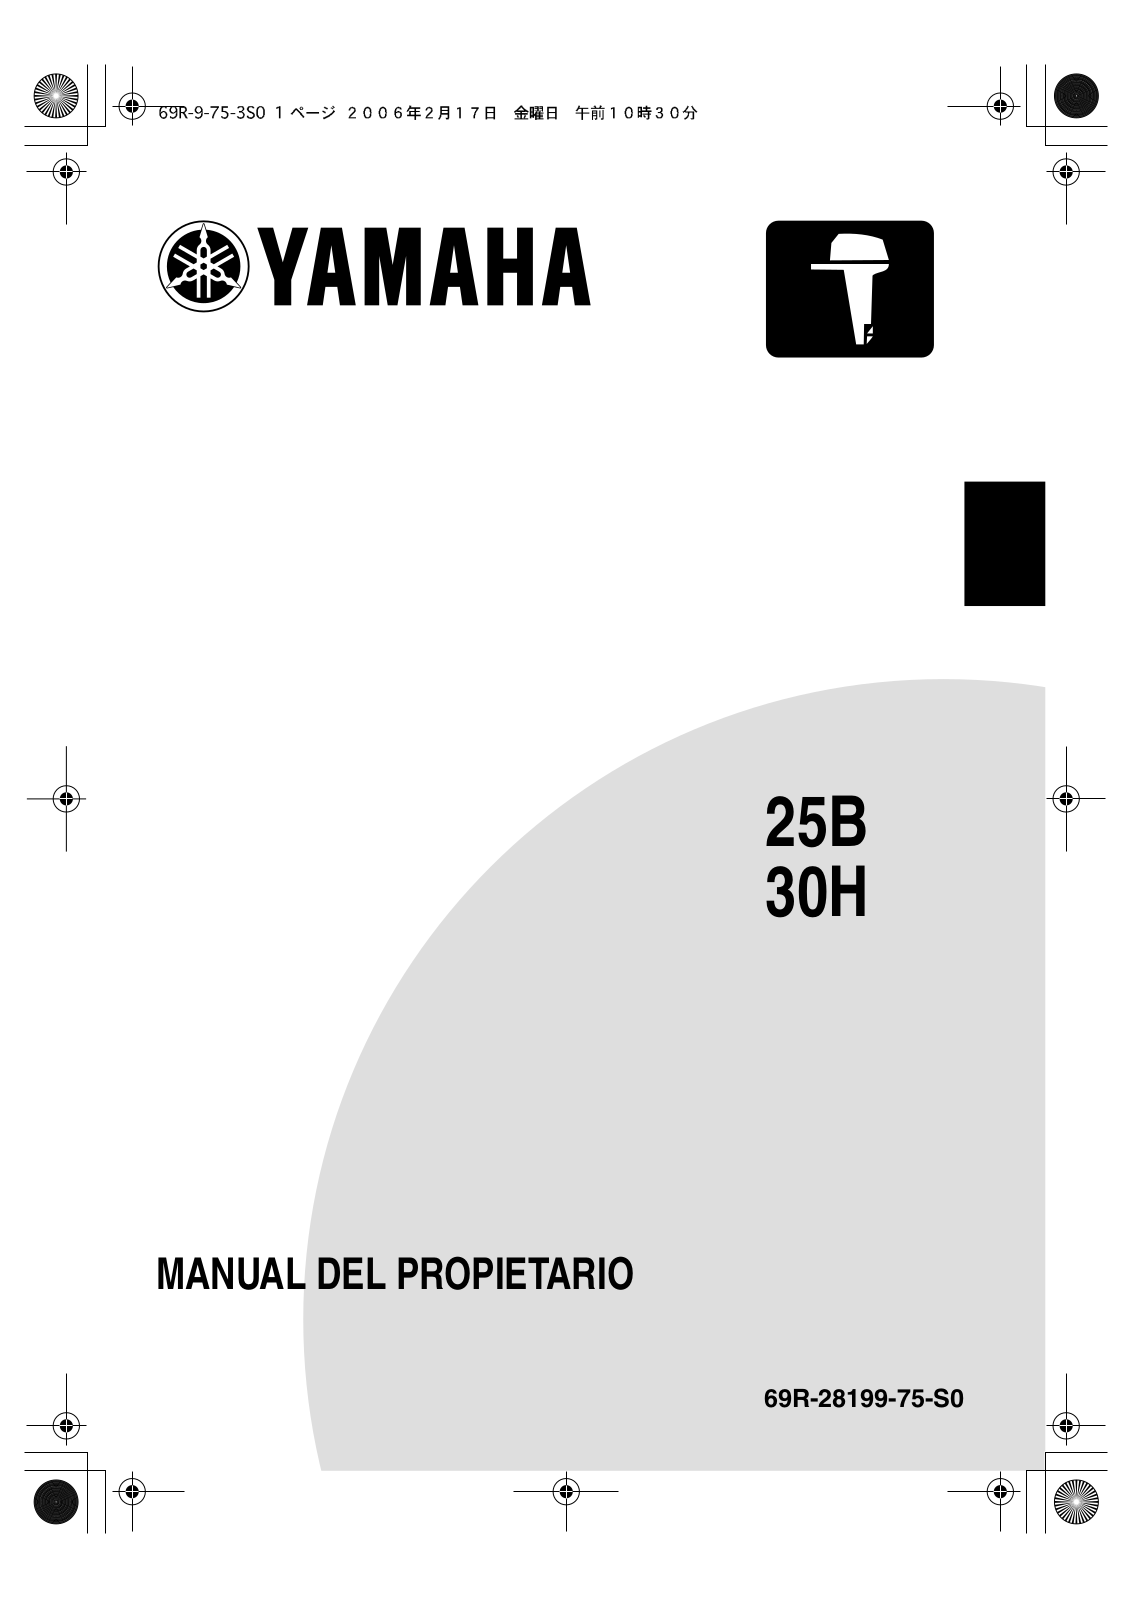 Yamaha 30H, 25B User Manual